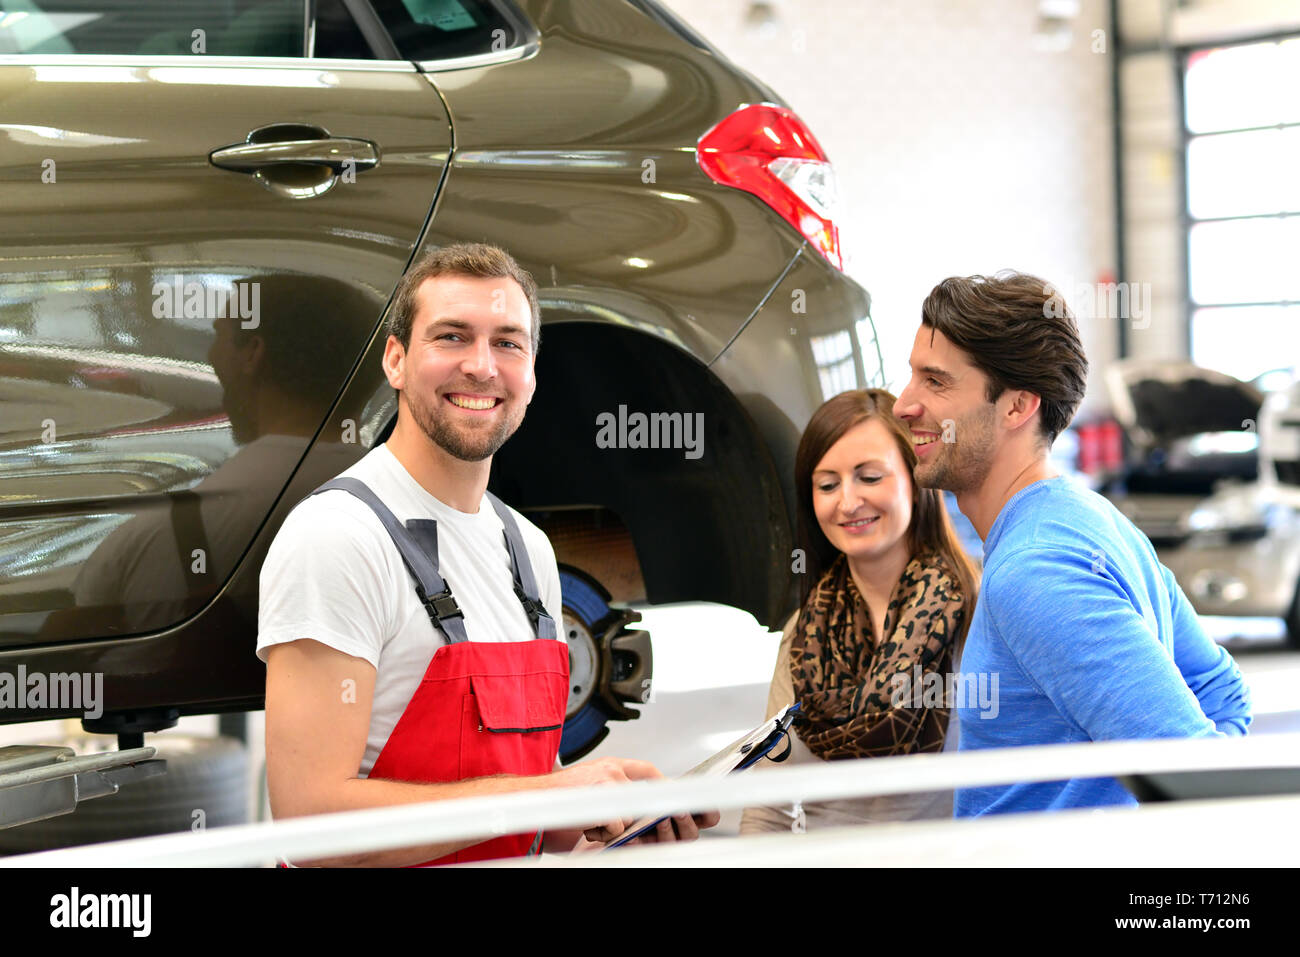 Kundendienst in einer Garage - Mechaniker und die Reparatur eines Fahrzeugs besprechen Stockfoto